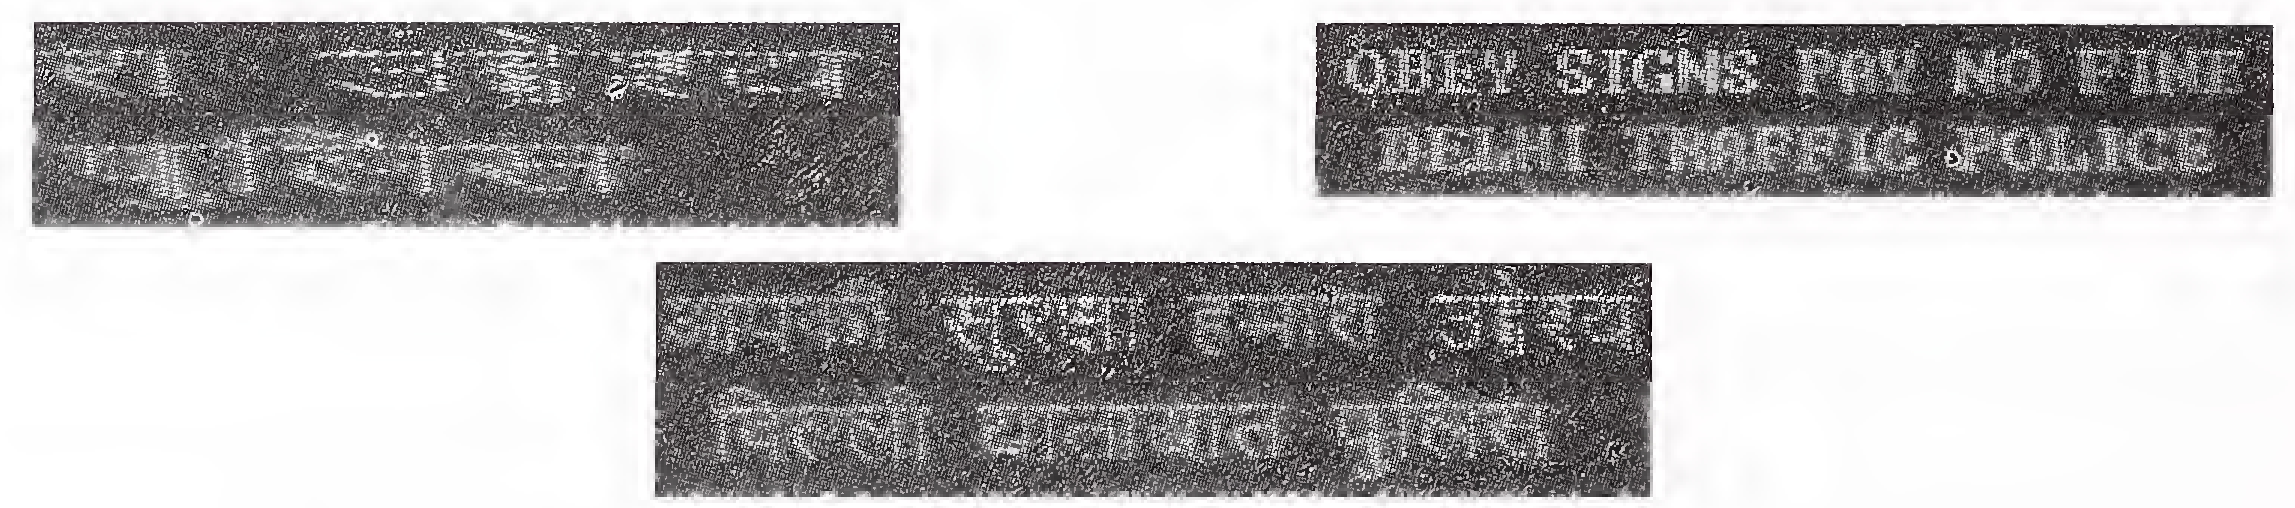 புகைப்படம் 2 என்.எச் -2 இல் வி.எம்.எஸ் போர்டுகள் மூலம் போக்குவரத்து செய்திகளின் வழக்கமான காட்சி